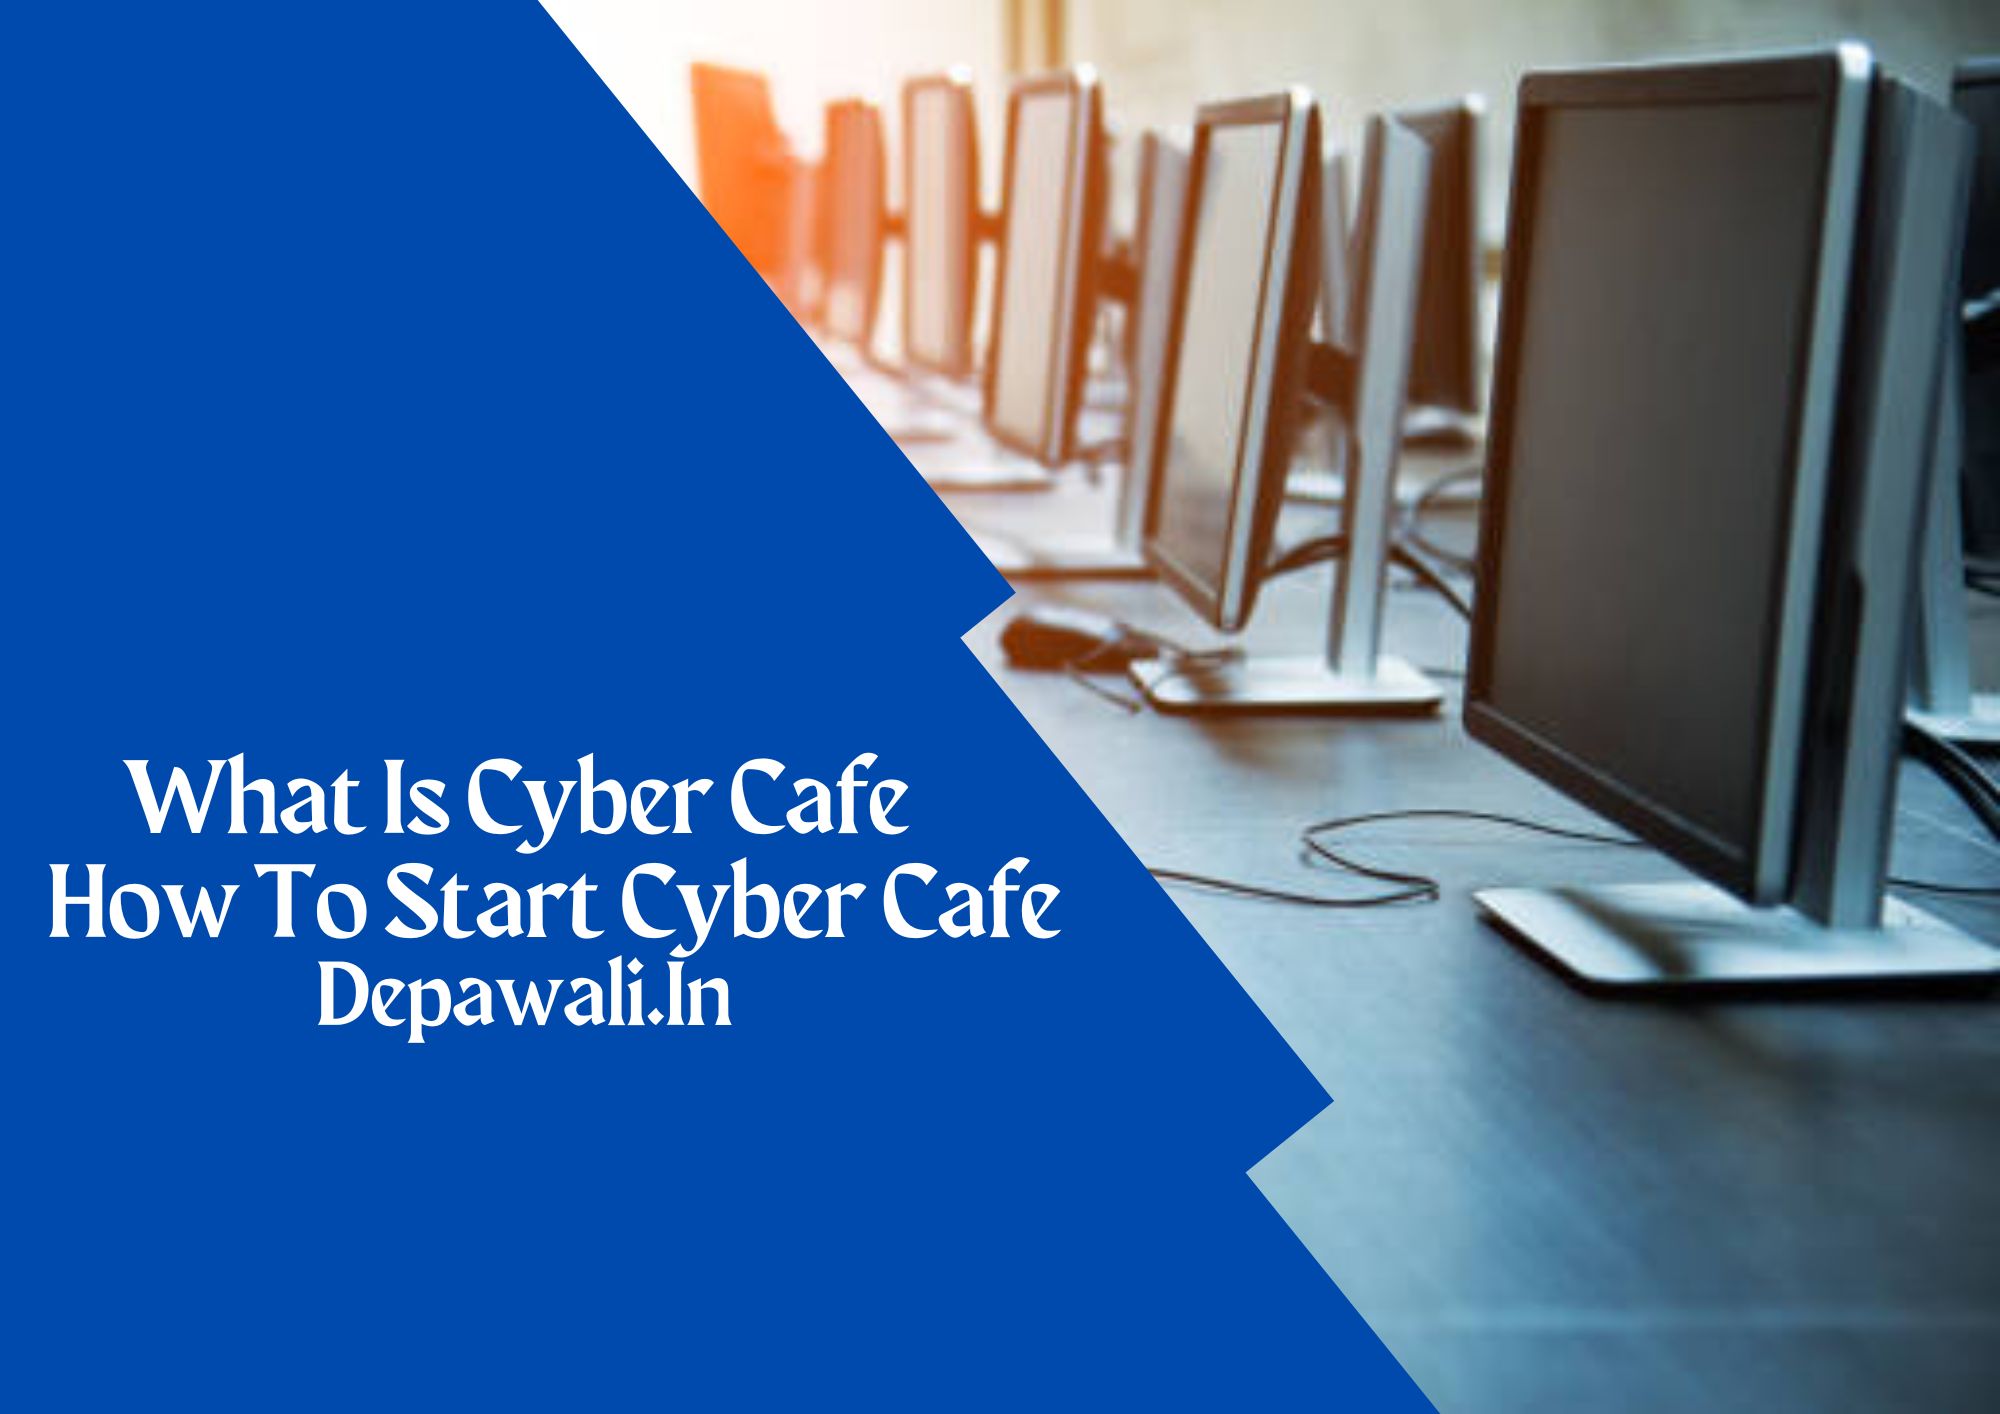 साइबर कैफे क्या है? साइबर कैफे बिजनेस कैसे शुरू करे - (Cyber Cafe In Hindi)